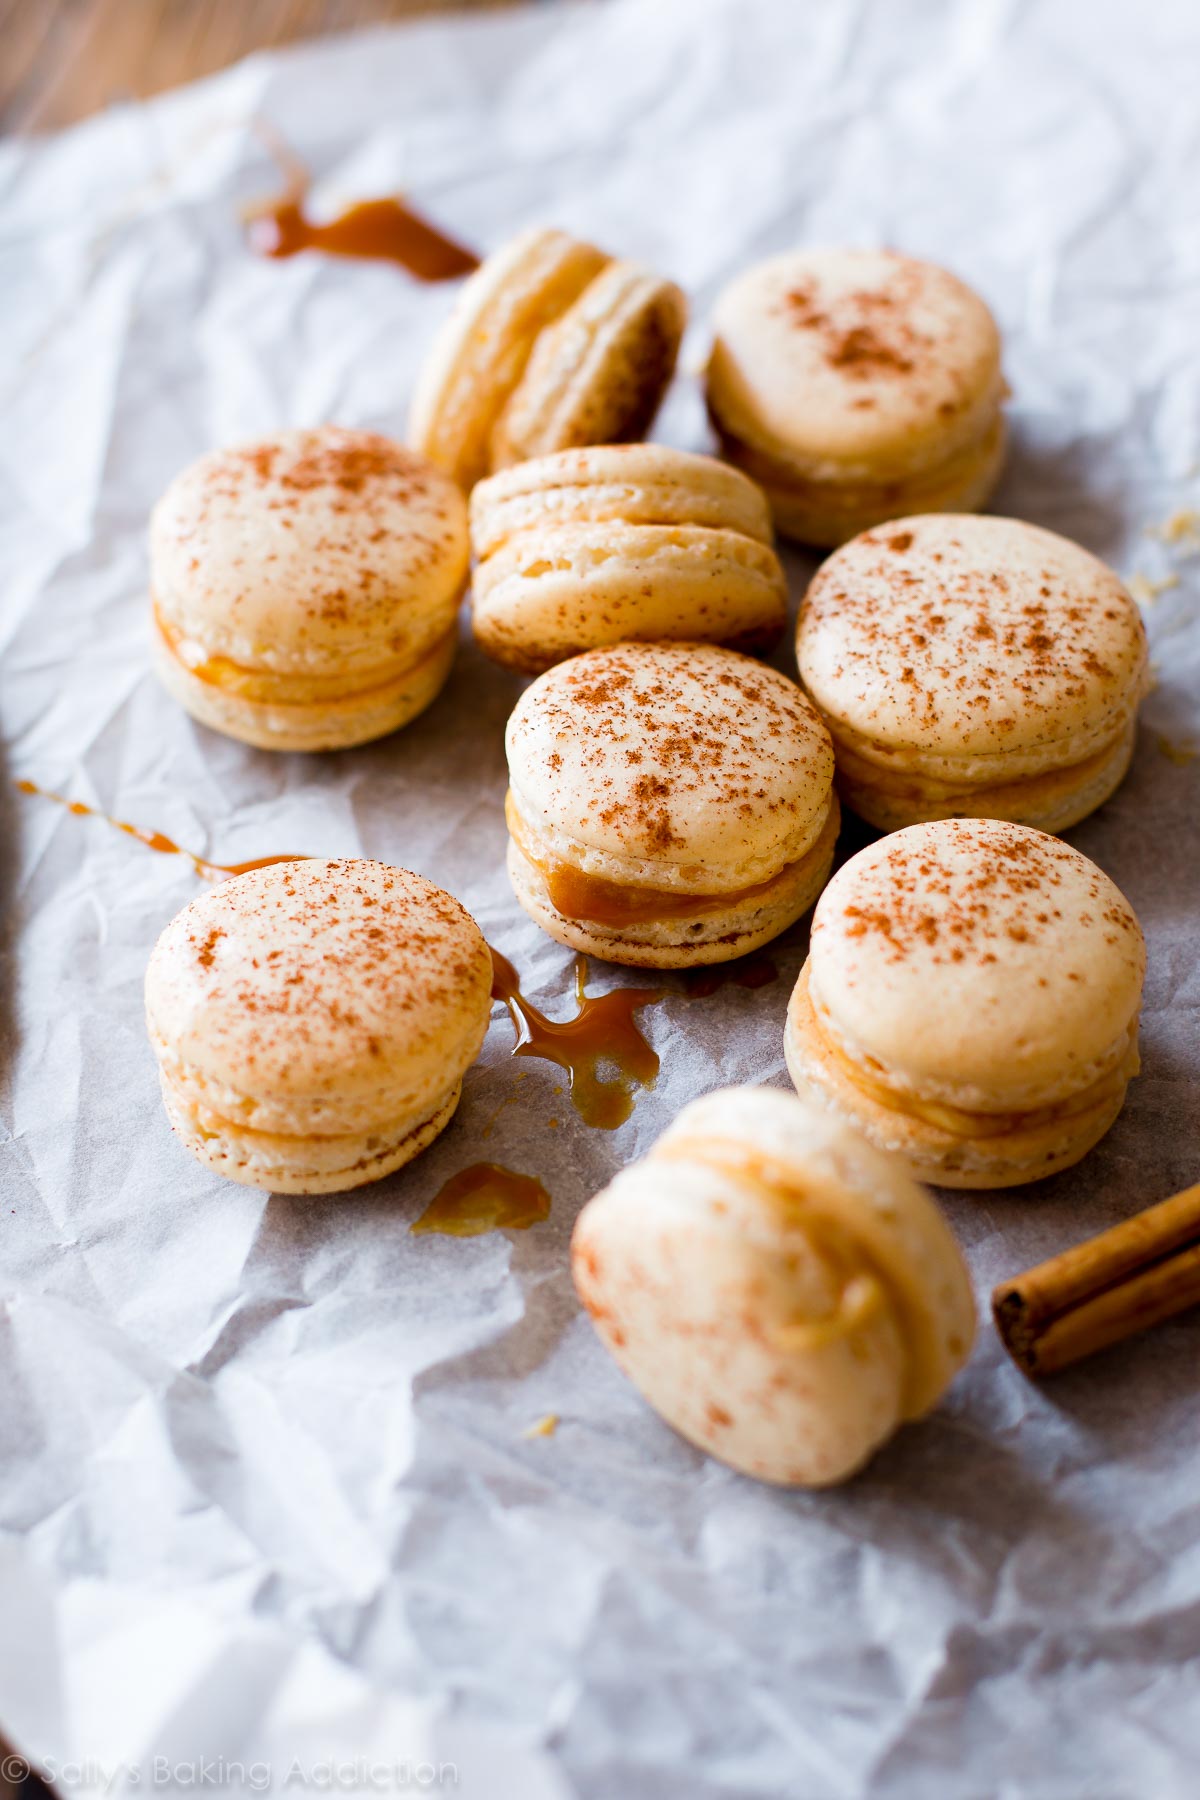 Biscuits macaron bricolage français avec garniture à la cannelle et à la crème au beurre caramel salé! Recette sur sallysbakingaddiction.com